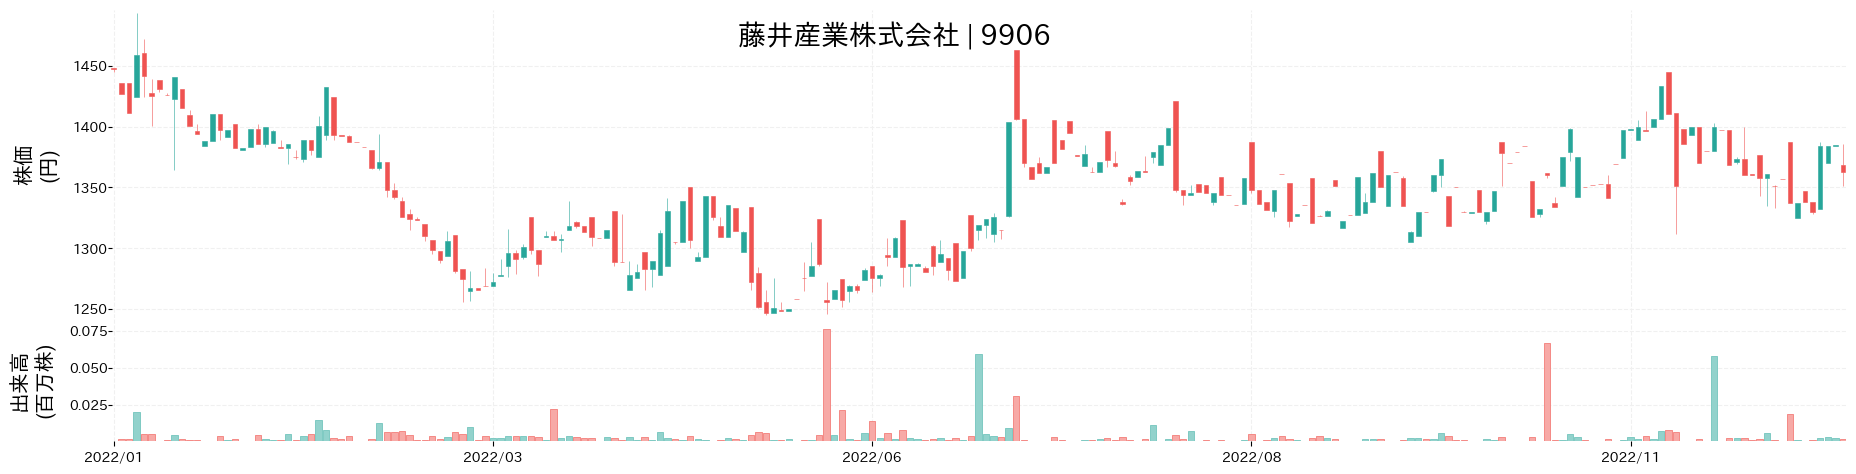 藤井産業の株価推移(2022)